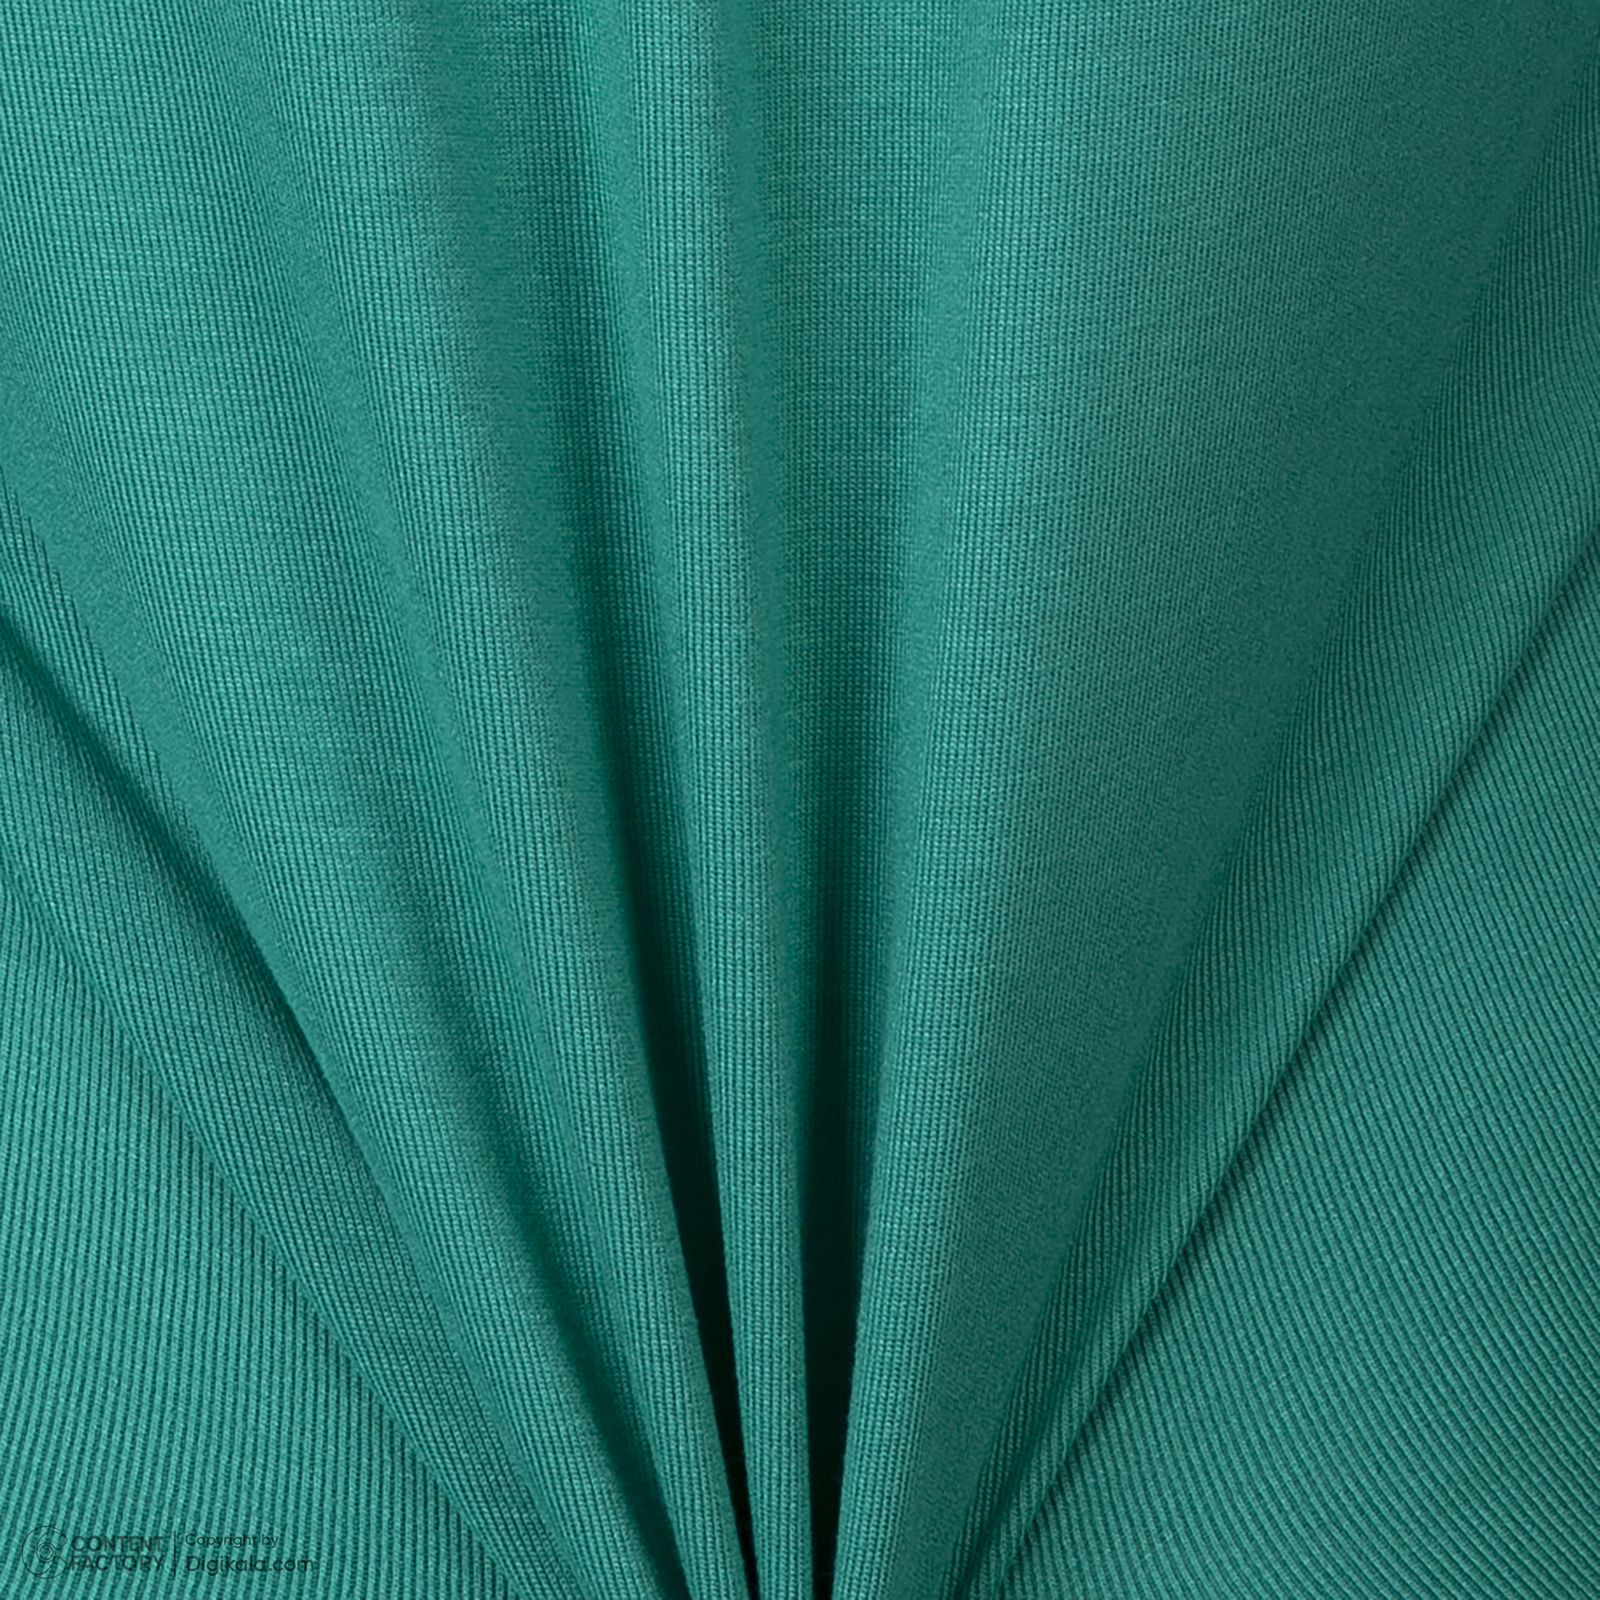 سویشرت زنانه برنس مدل ستیلا رنگ سبز روشن -  - 5